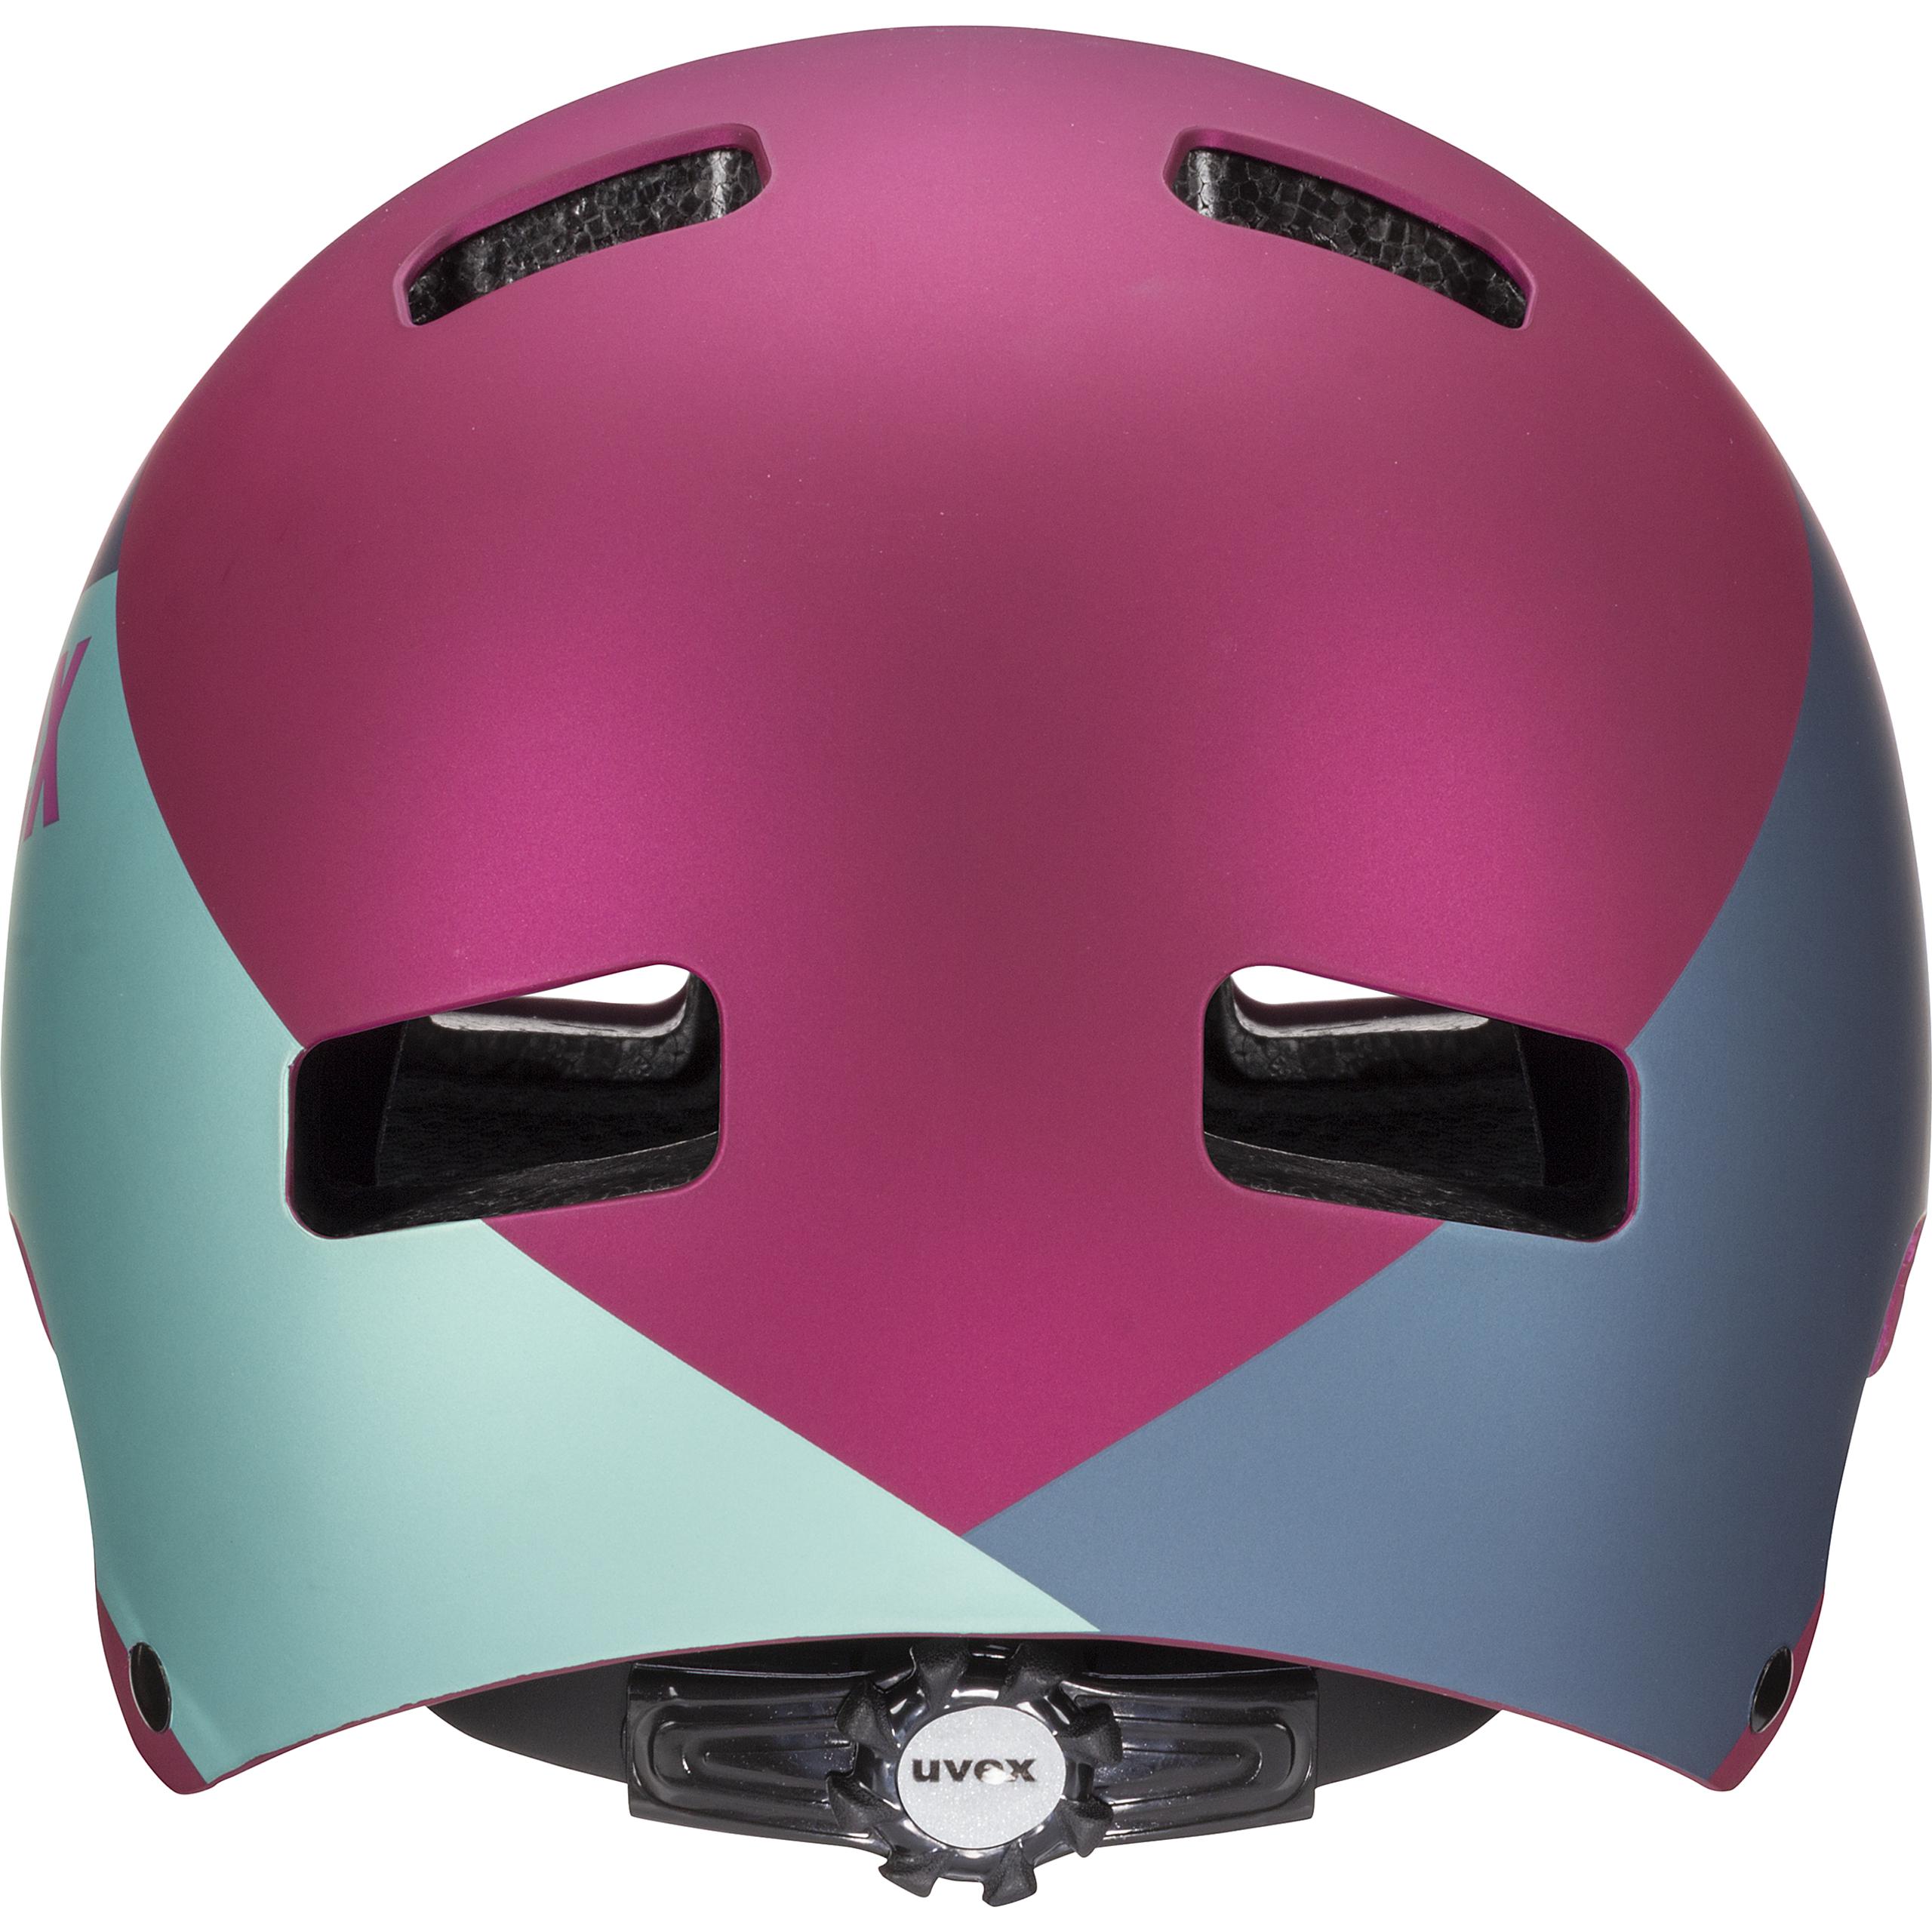 人気商品ランキング uvex ヘルメット pro 5 sushitai.com.mx